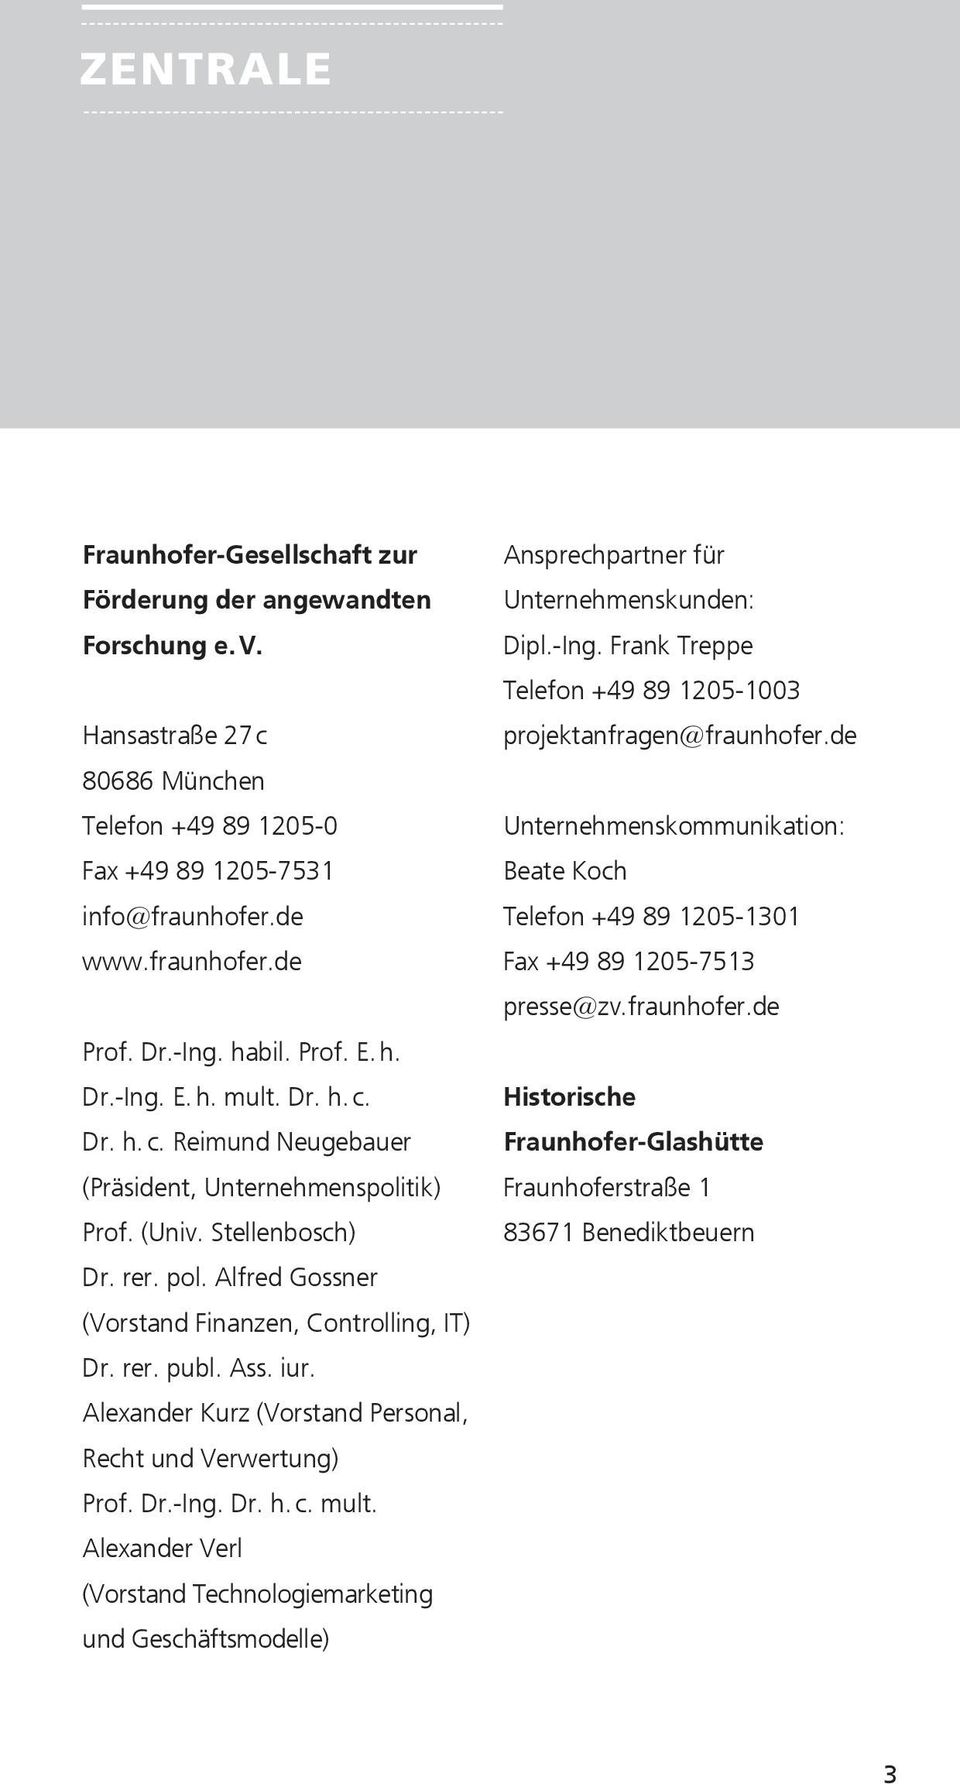 Alfred Gossner (Vorstand Finanzen, Controlling, IT) Dr. rer. publ. Ass. iur. Alexander Kurz (Vorstand Personal, Recht und Verwertung) Prof. Dr.-Ing. Dr. h. c. mult.